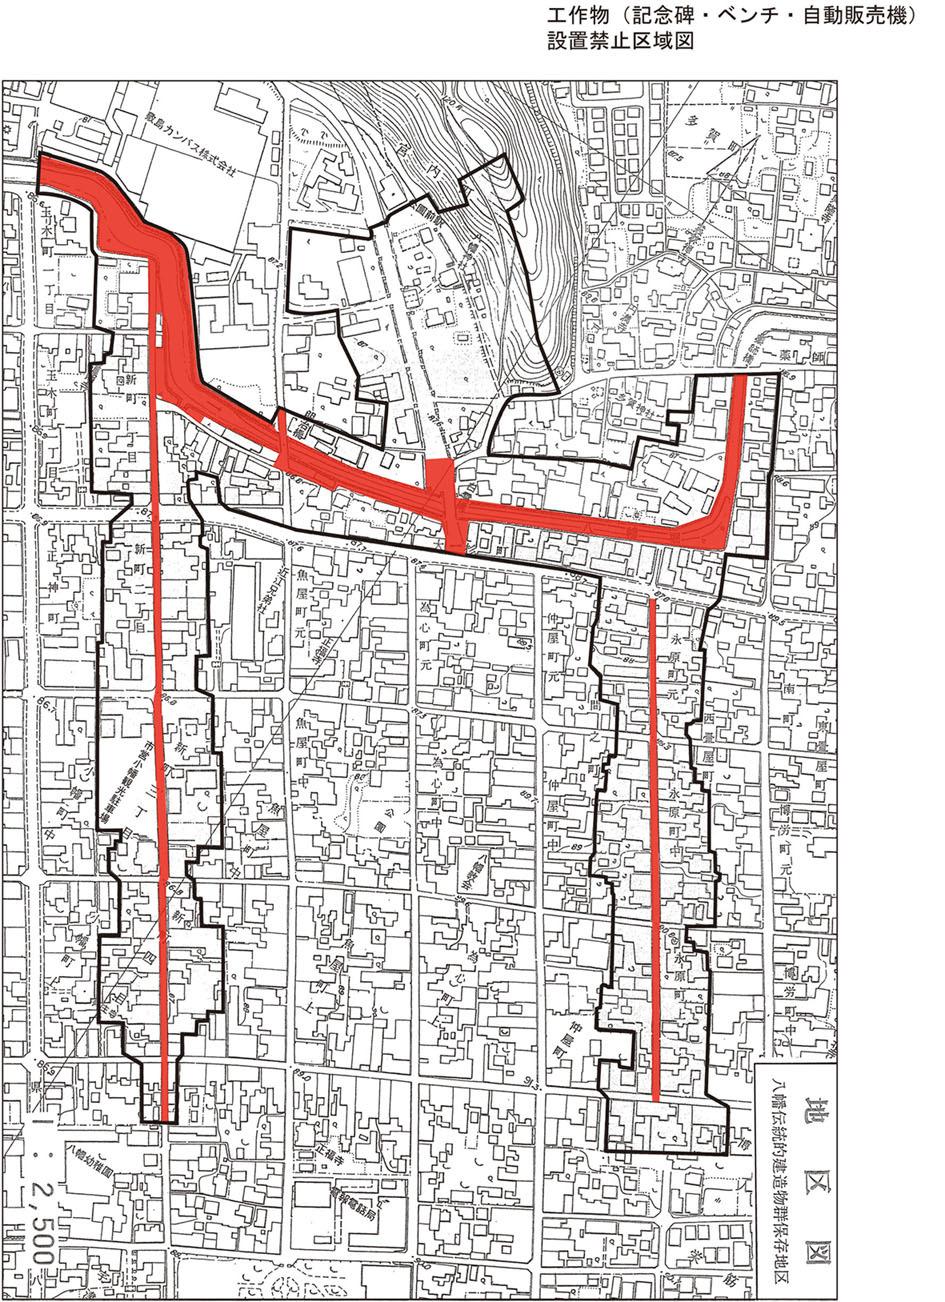 工作物（記念碑・ベンチ・自動販売機設置禁止区域図）黒枠線と赤い範囲図で示された白地図